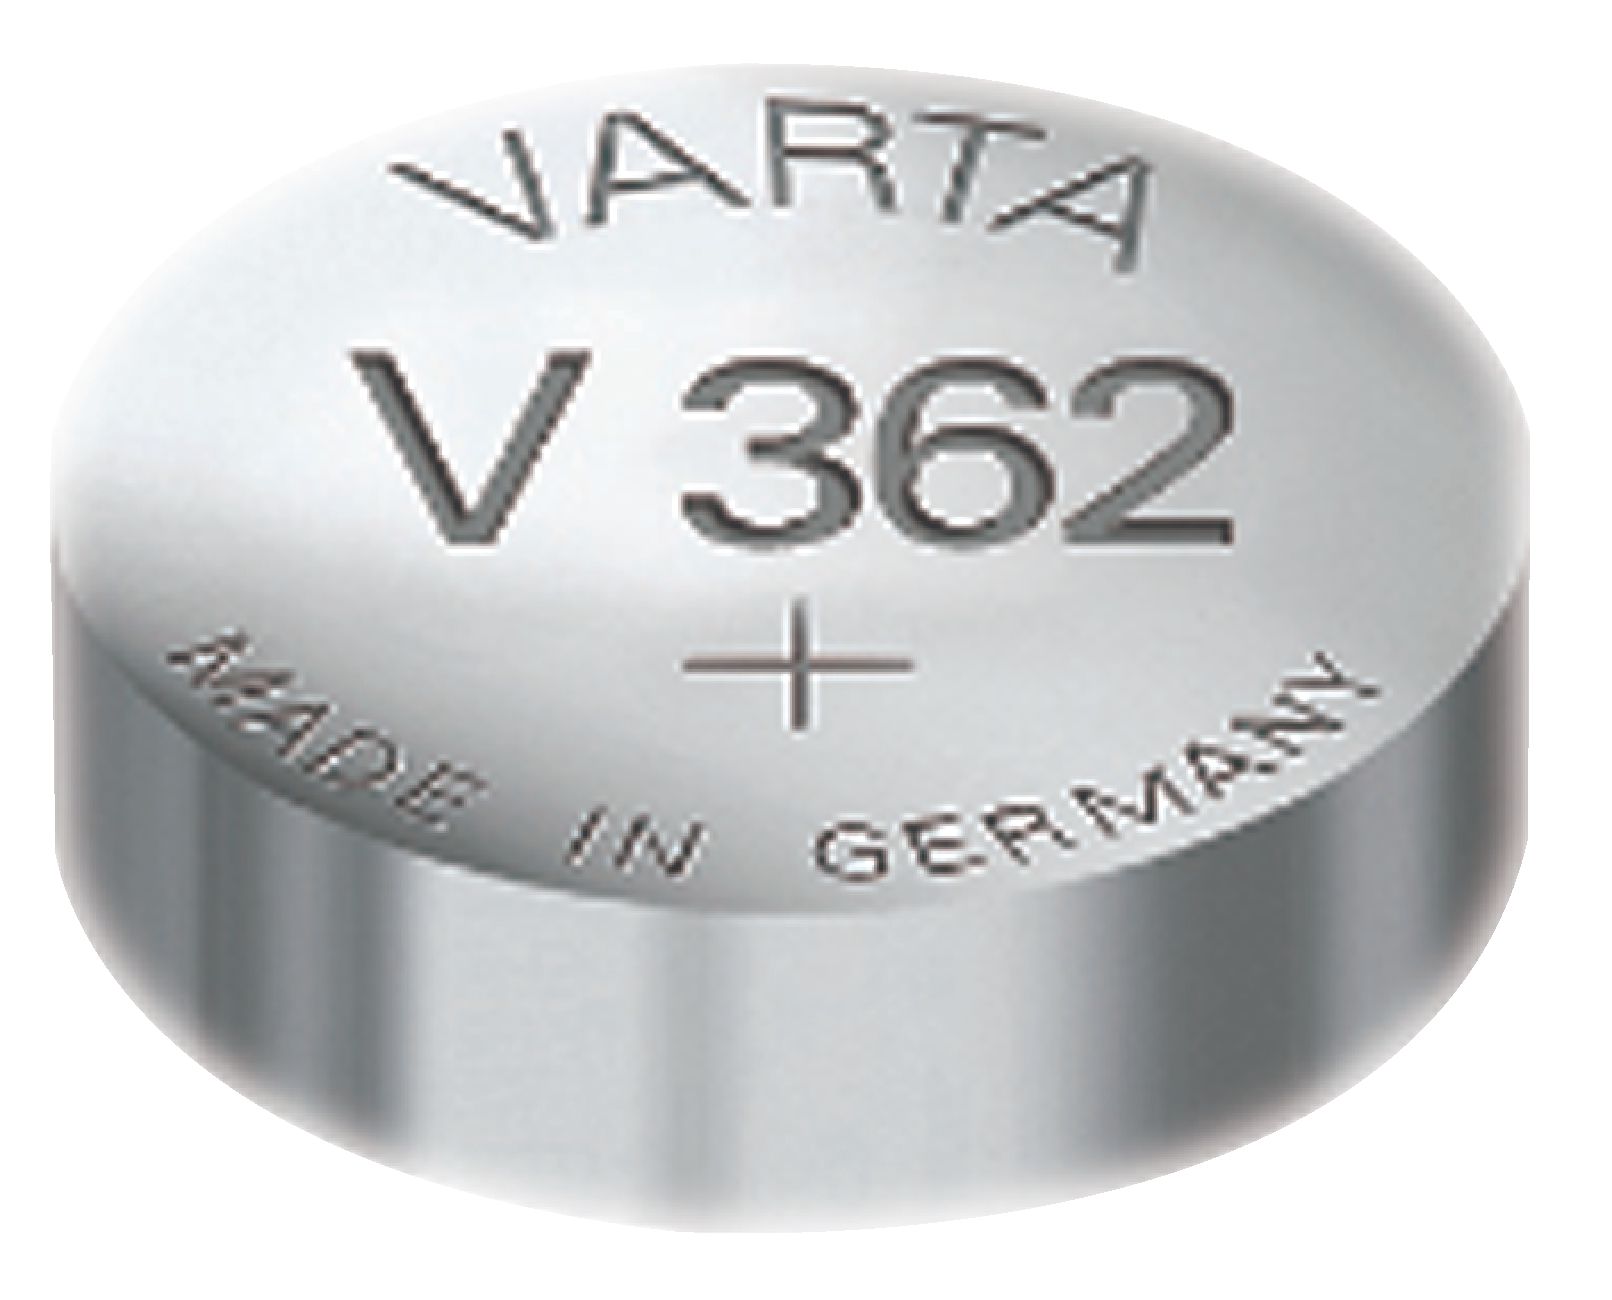 Stříbro-oxidová hodinková baterie SR58/V362 1.55 V 21 mAh, VARTA-V362